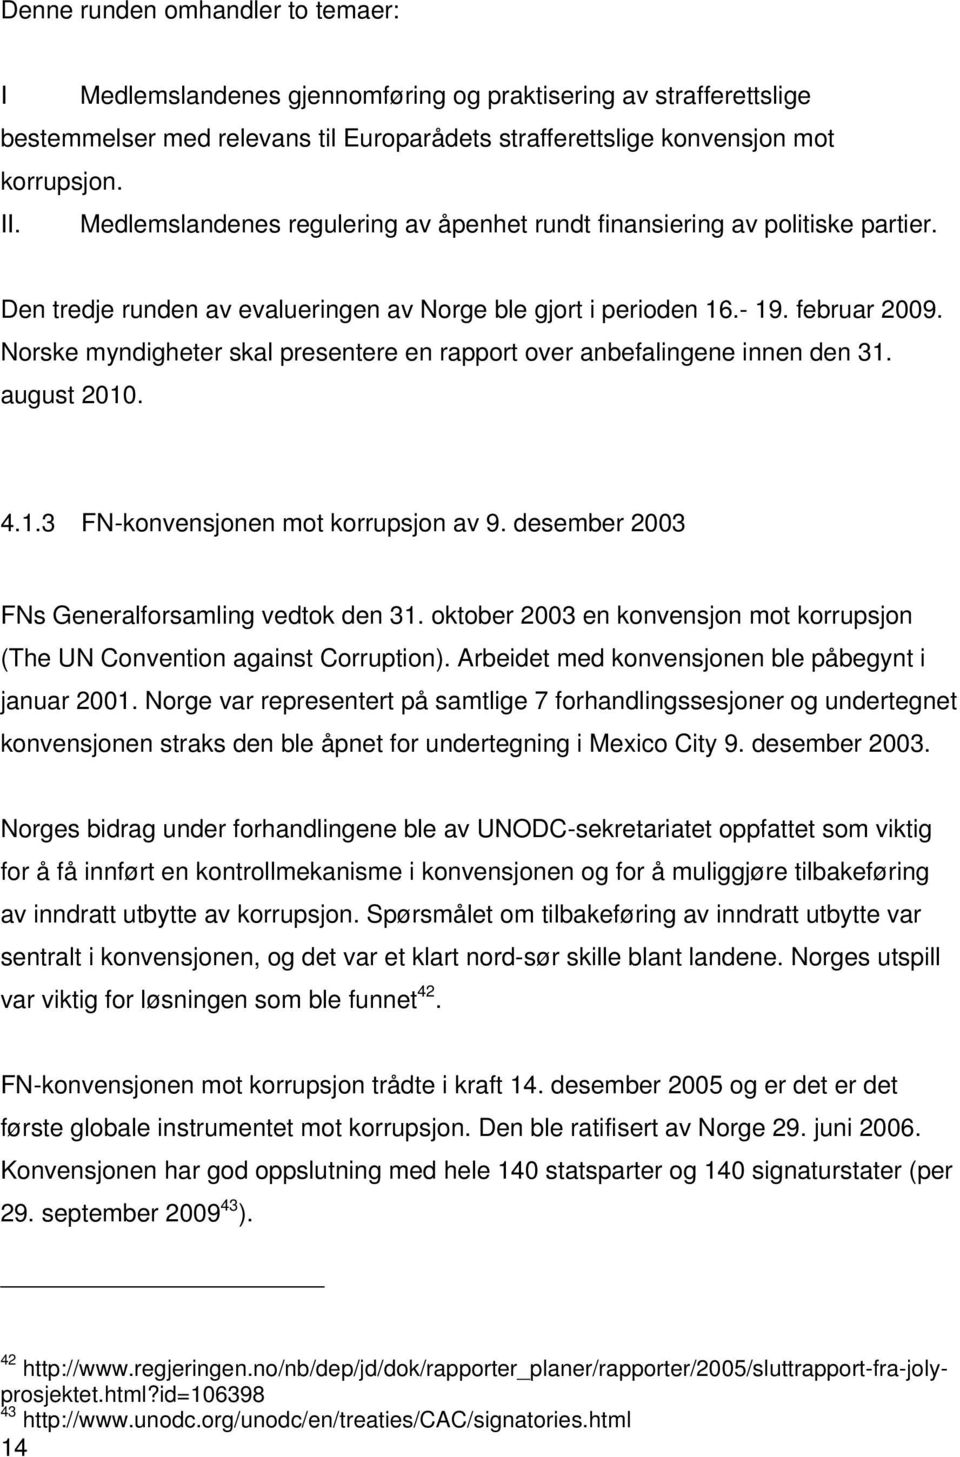 Norske myndigheter skal presentere en rapport over anbefalingene innen den 31. august 2010. 4.1.3 FN-konvensjonen mot korrupsjon av 9. desember 2003 FNs Generalforsamling vedtok den 31.